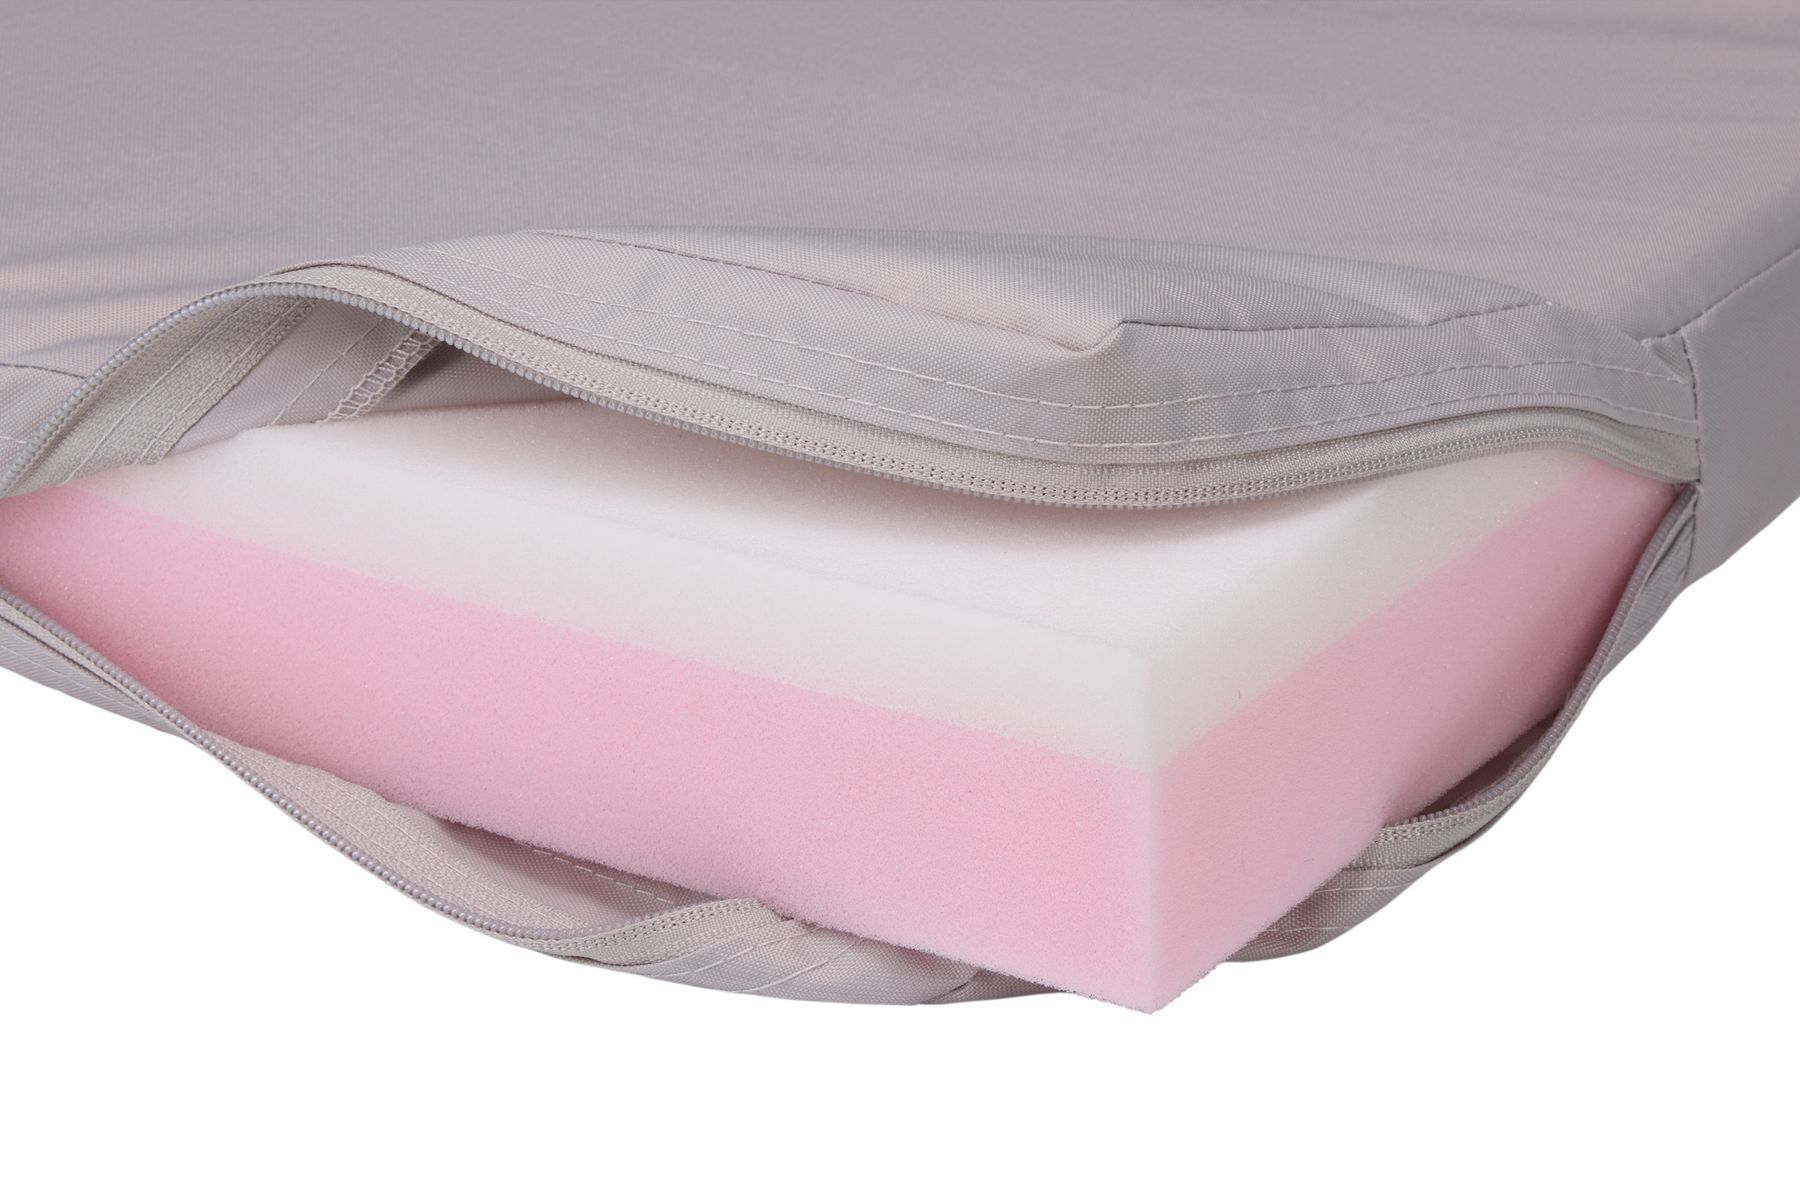 Thule Approach foam mattress